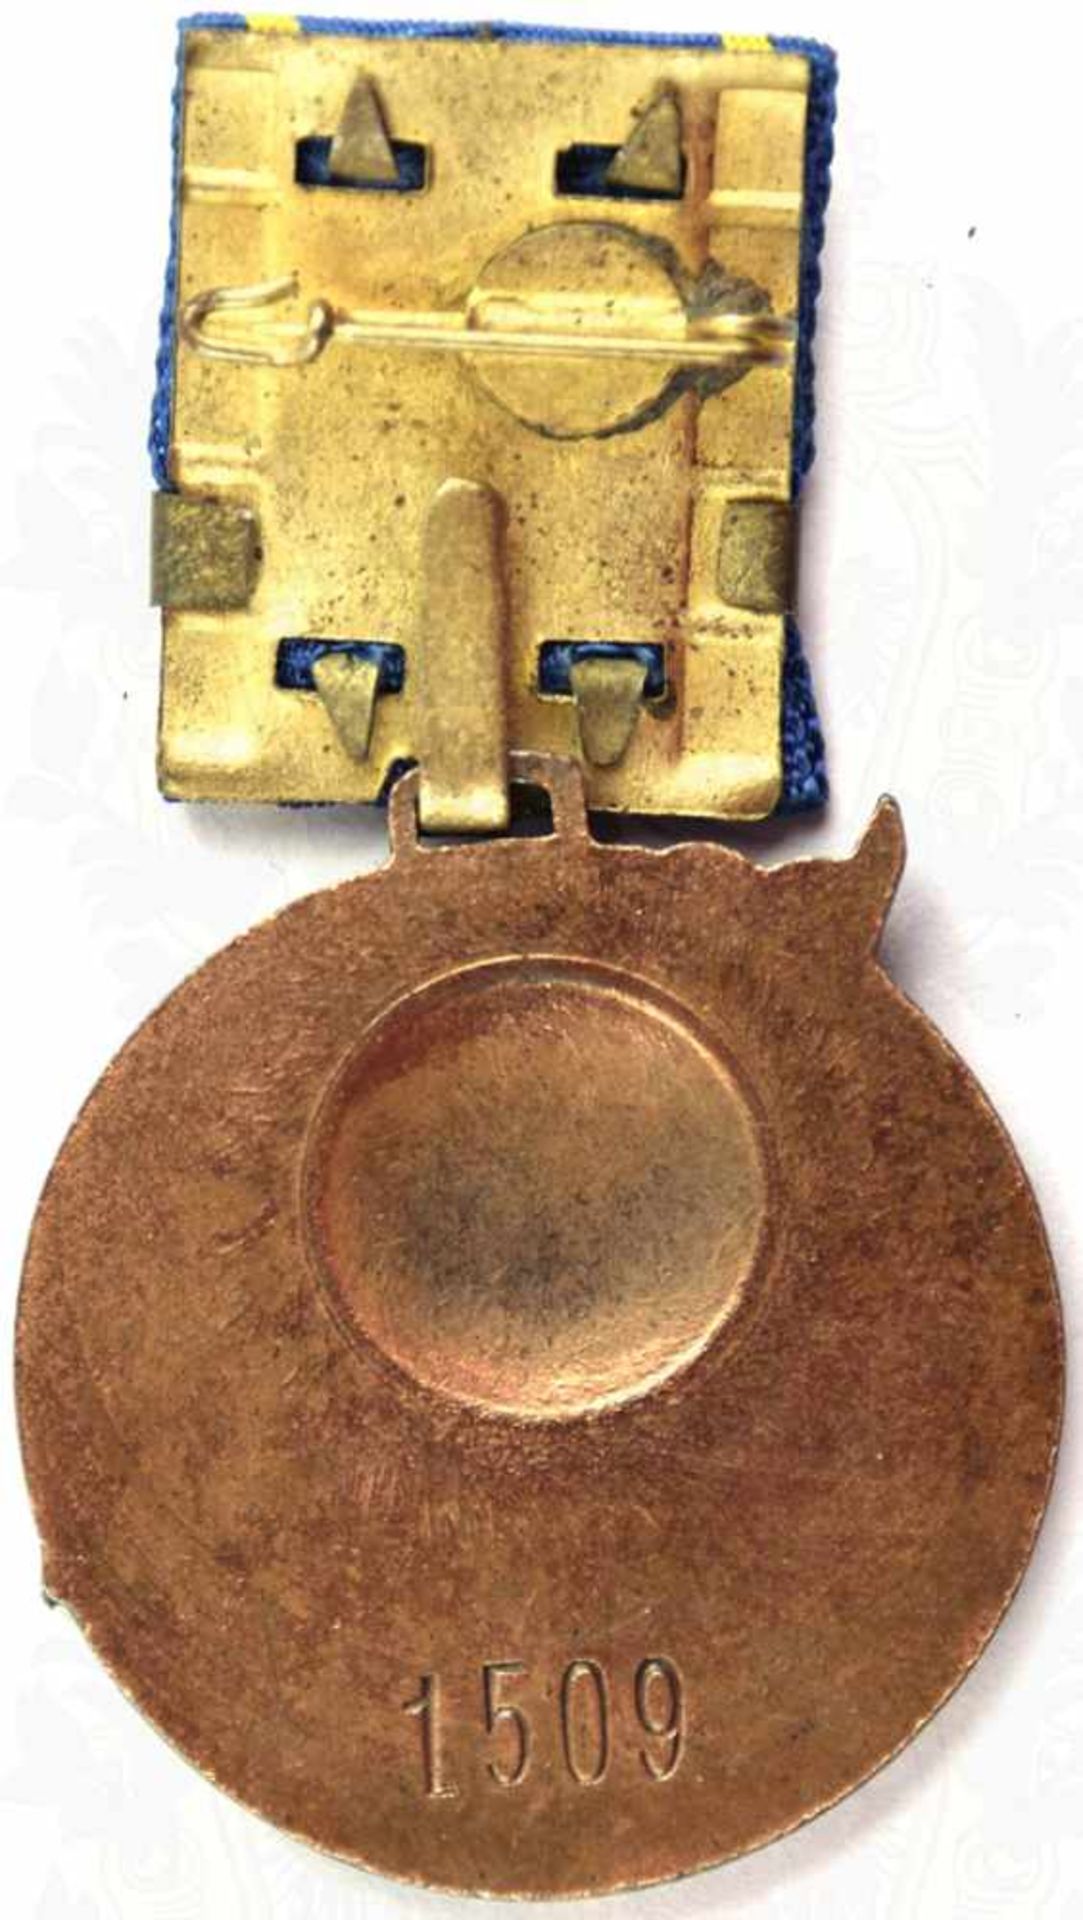 ERNST-THÄLMANN-MEDAILLE, Bronze, tls. rot lackiert, Rs. mit eingeschlagener Matrikel-Nr. „1509“, - Bild 3 aus 3